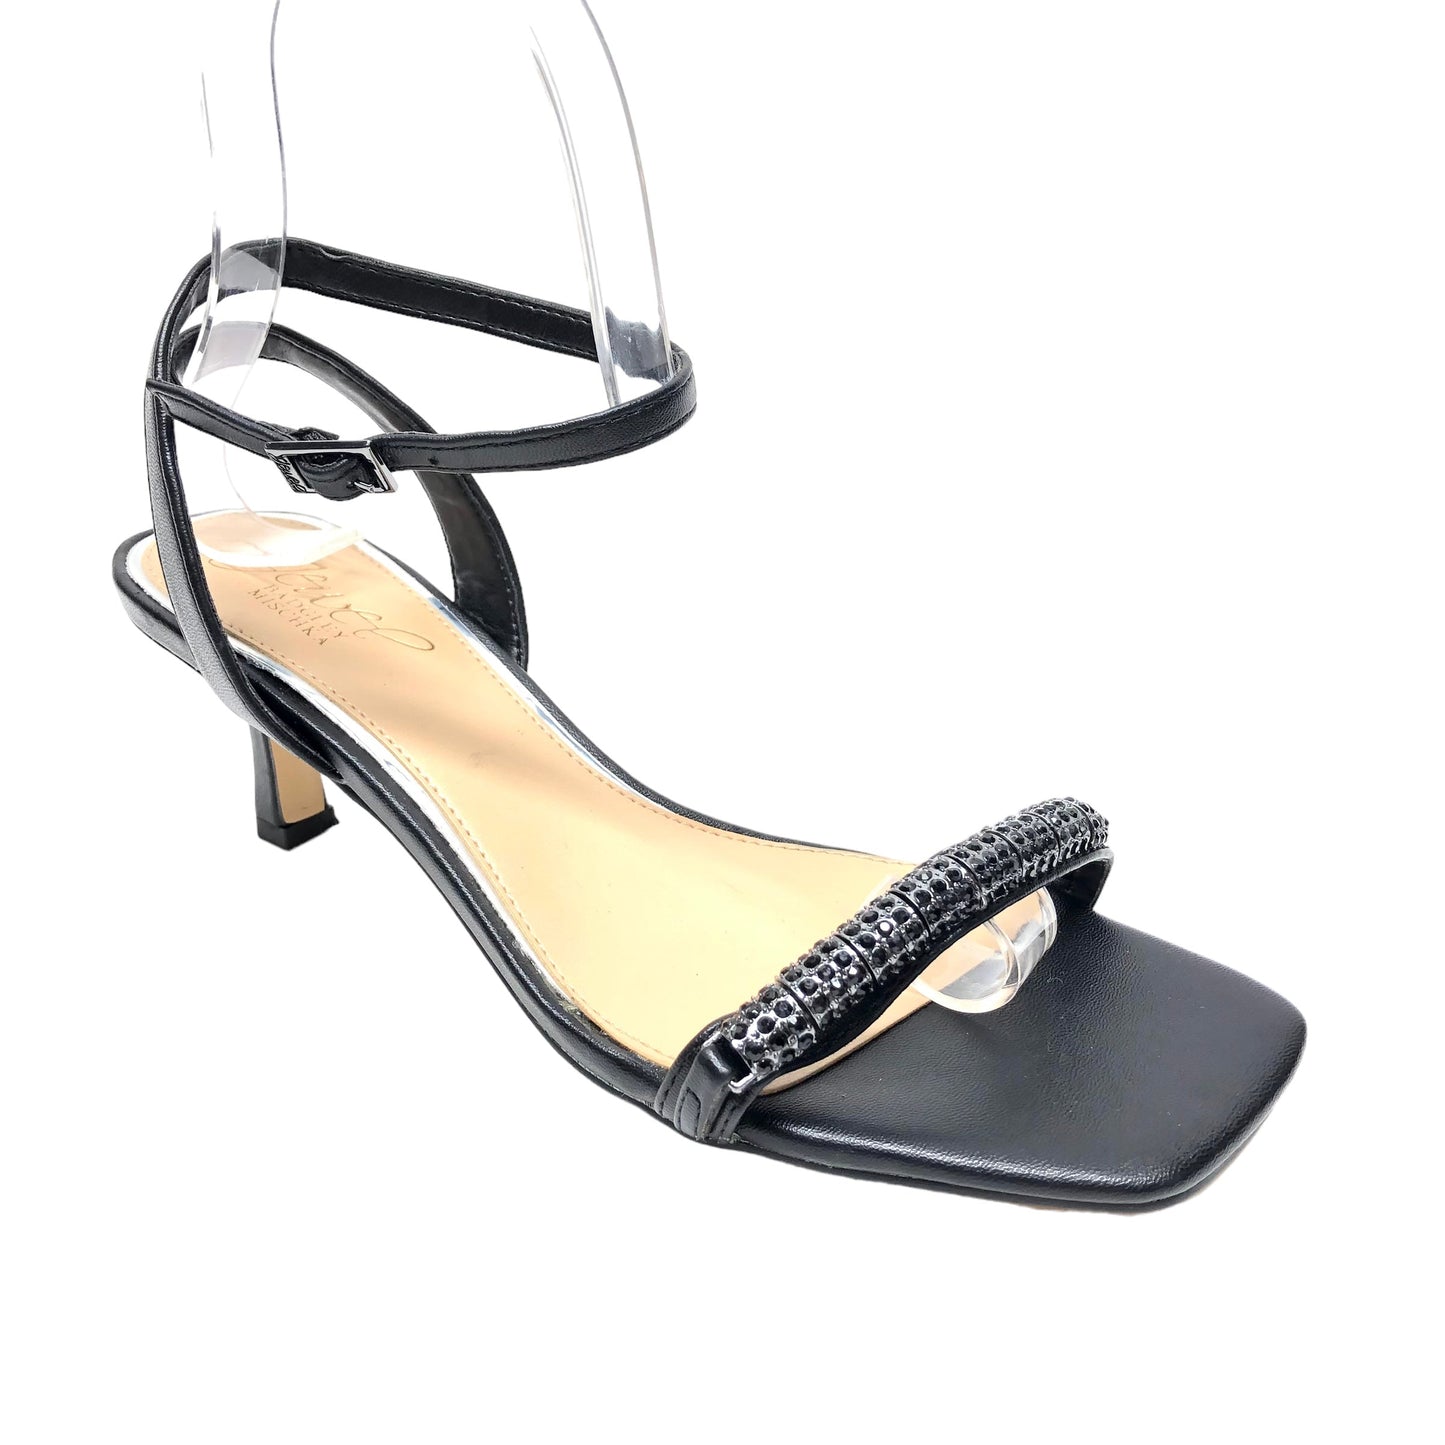 Sandals Heels Stiletto By Badgley Mischka  Size: 6